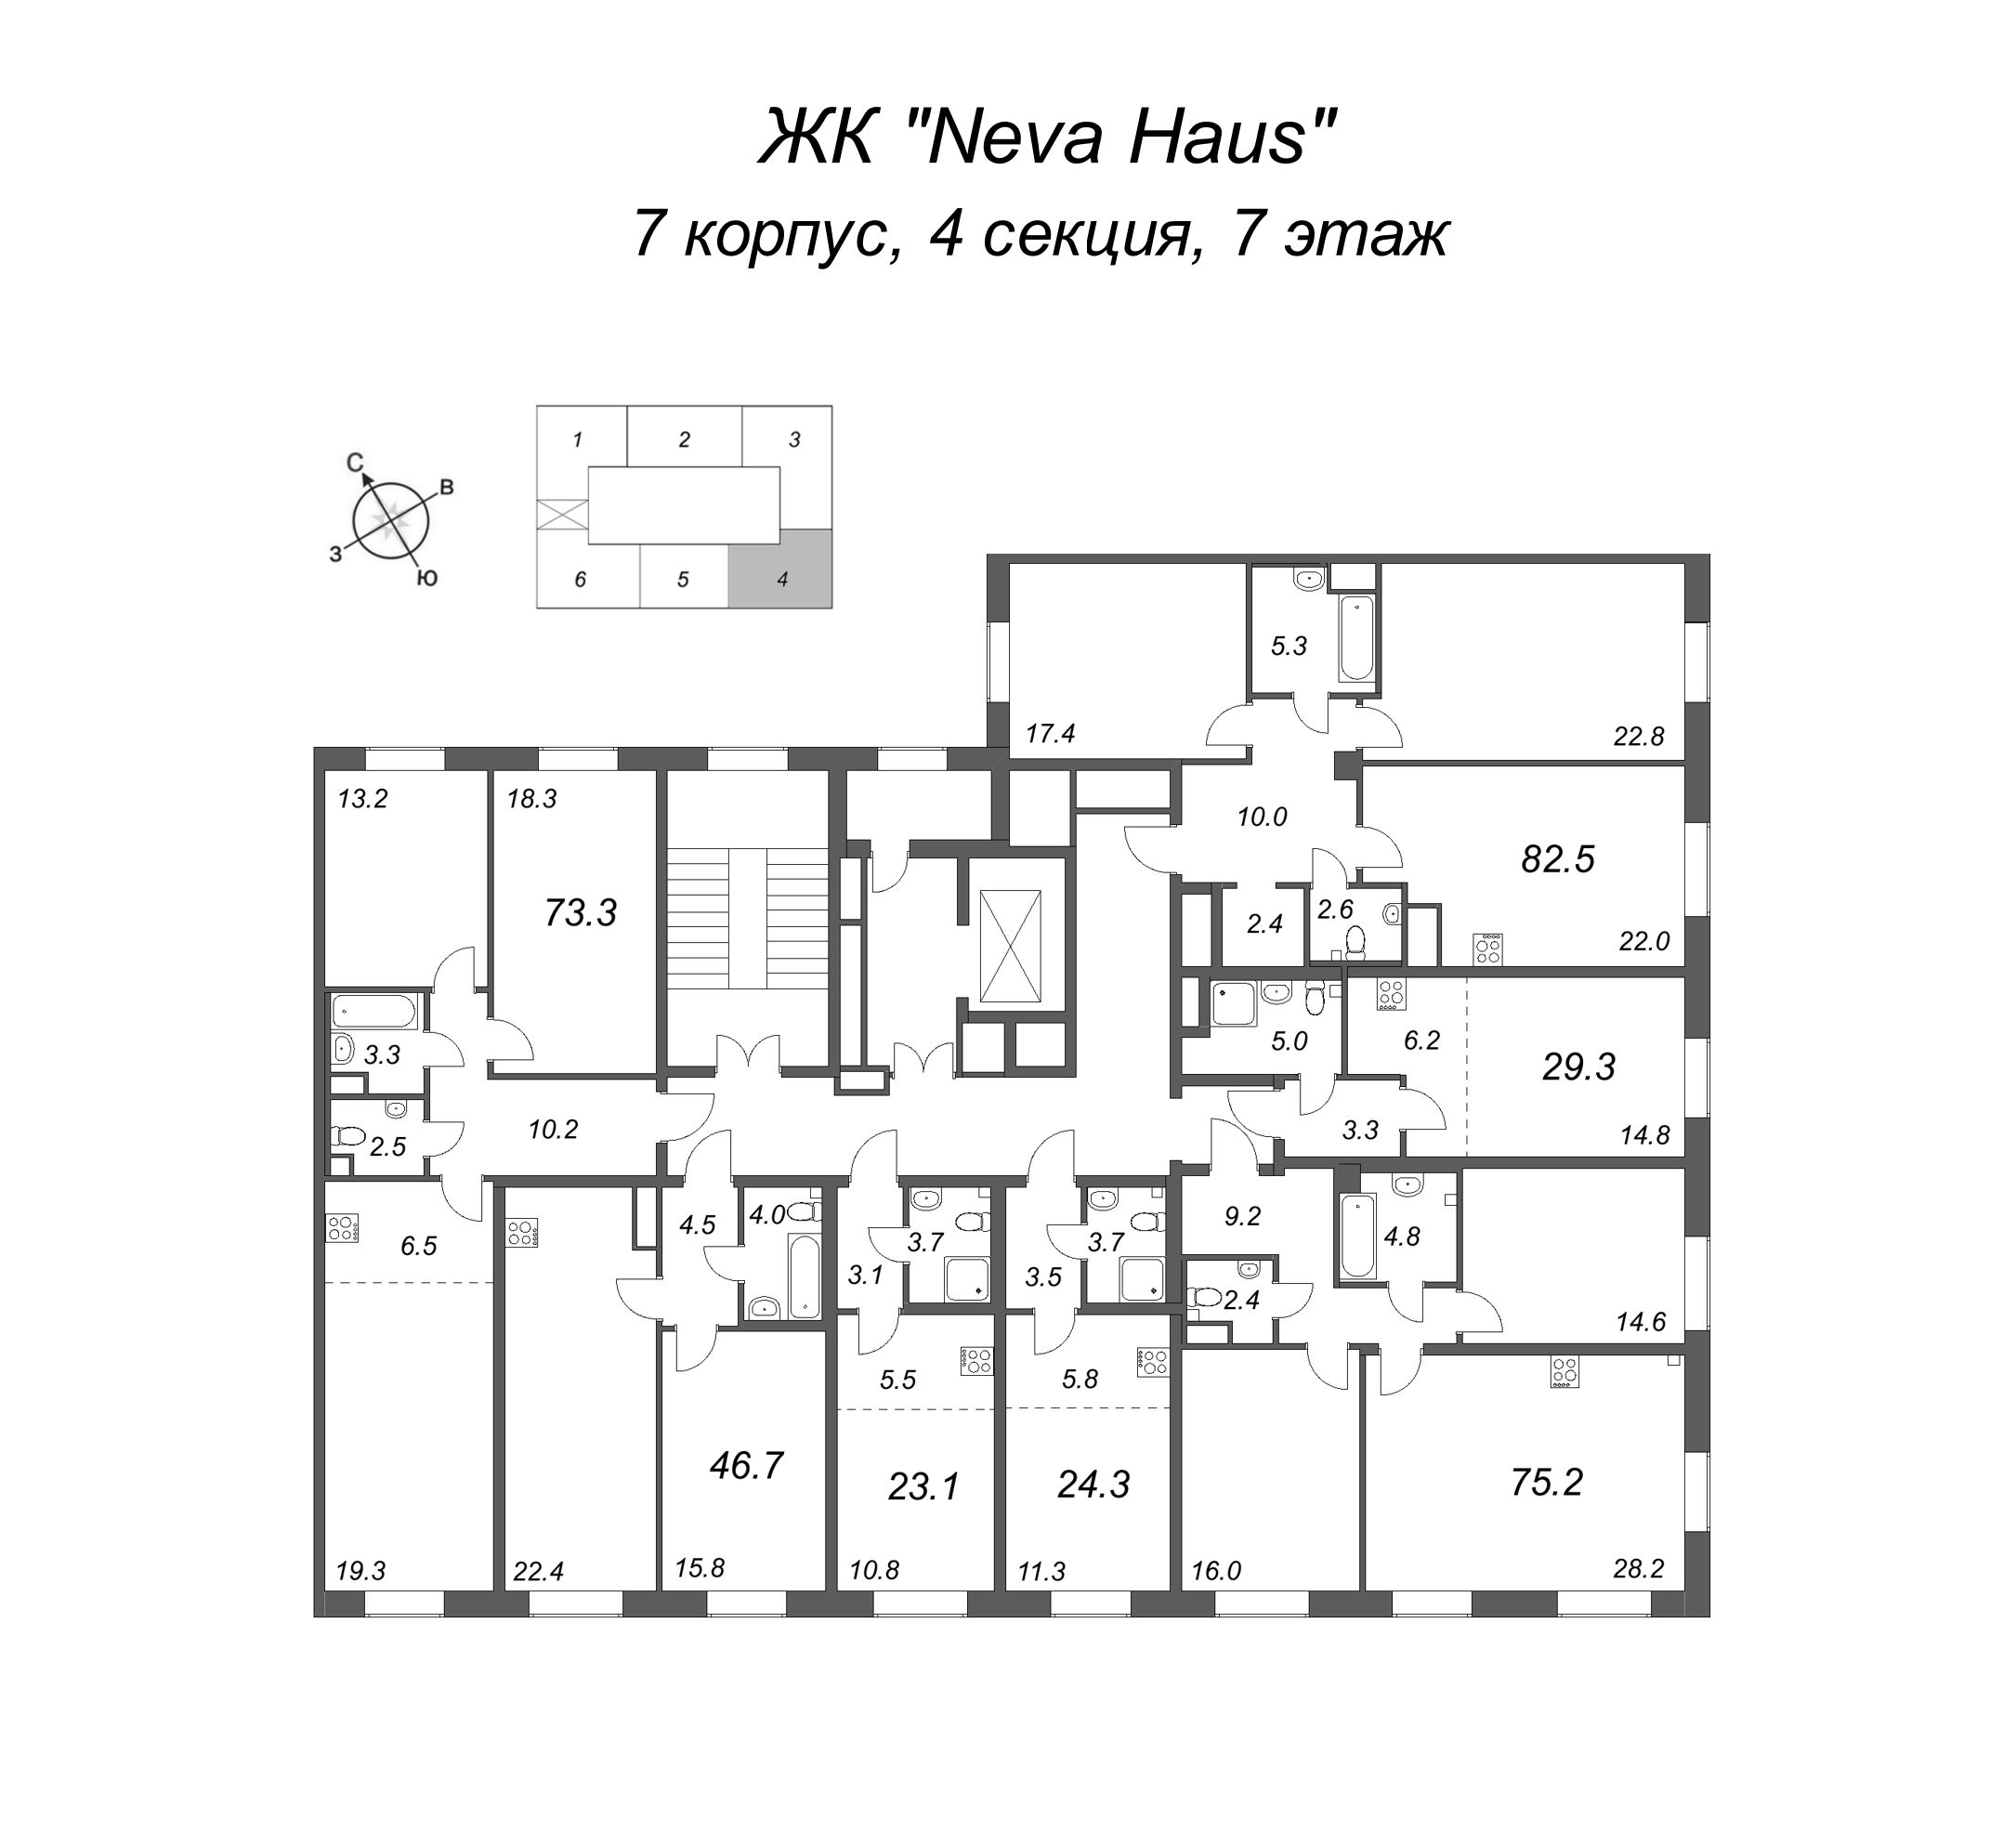 3-комнатная (Евро) квартира, 73 м² в ЖК "Neva Haus" - планировка этажа